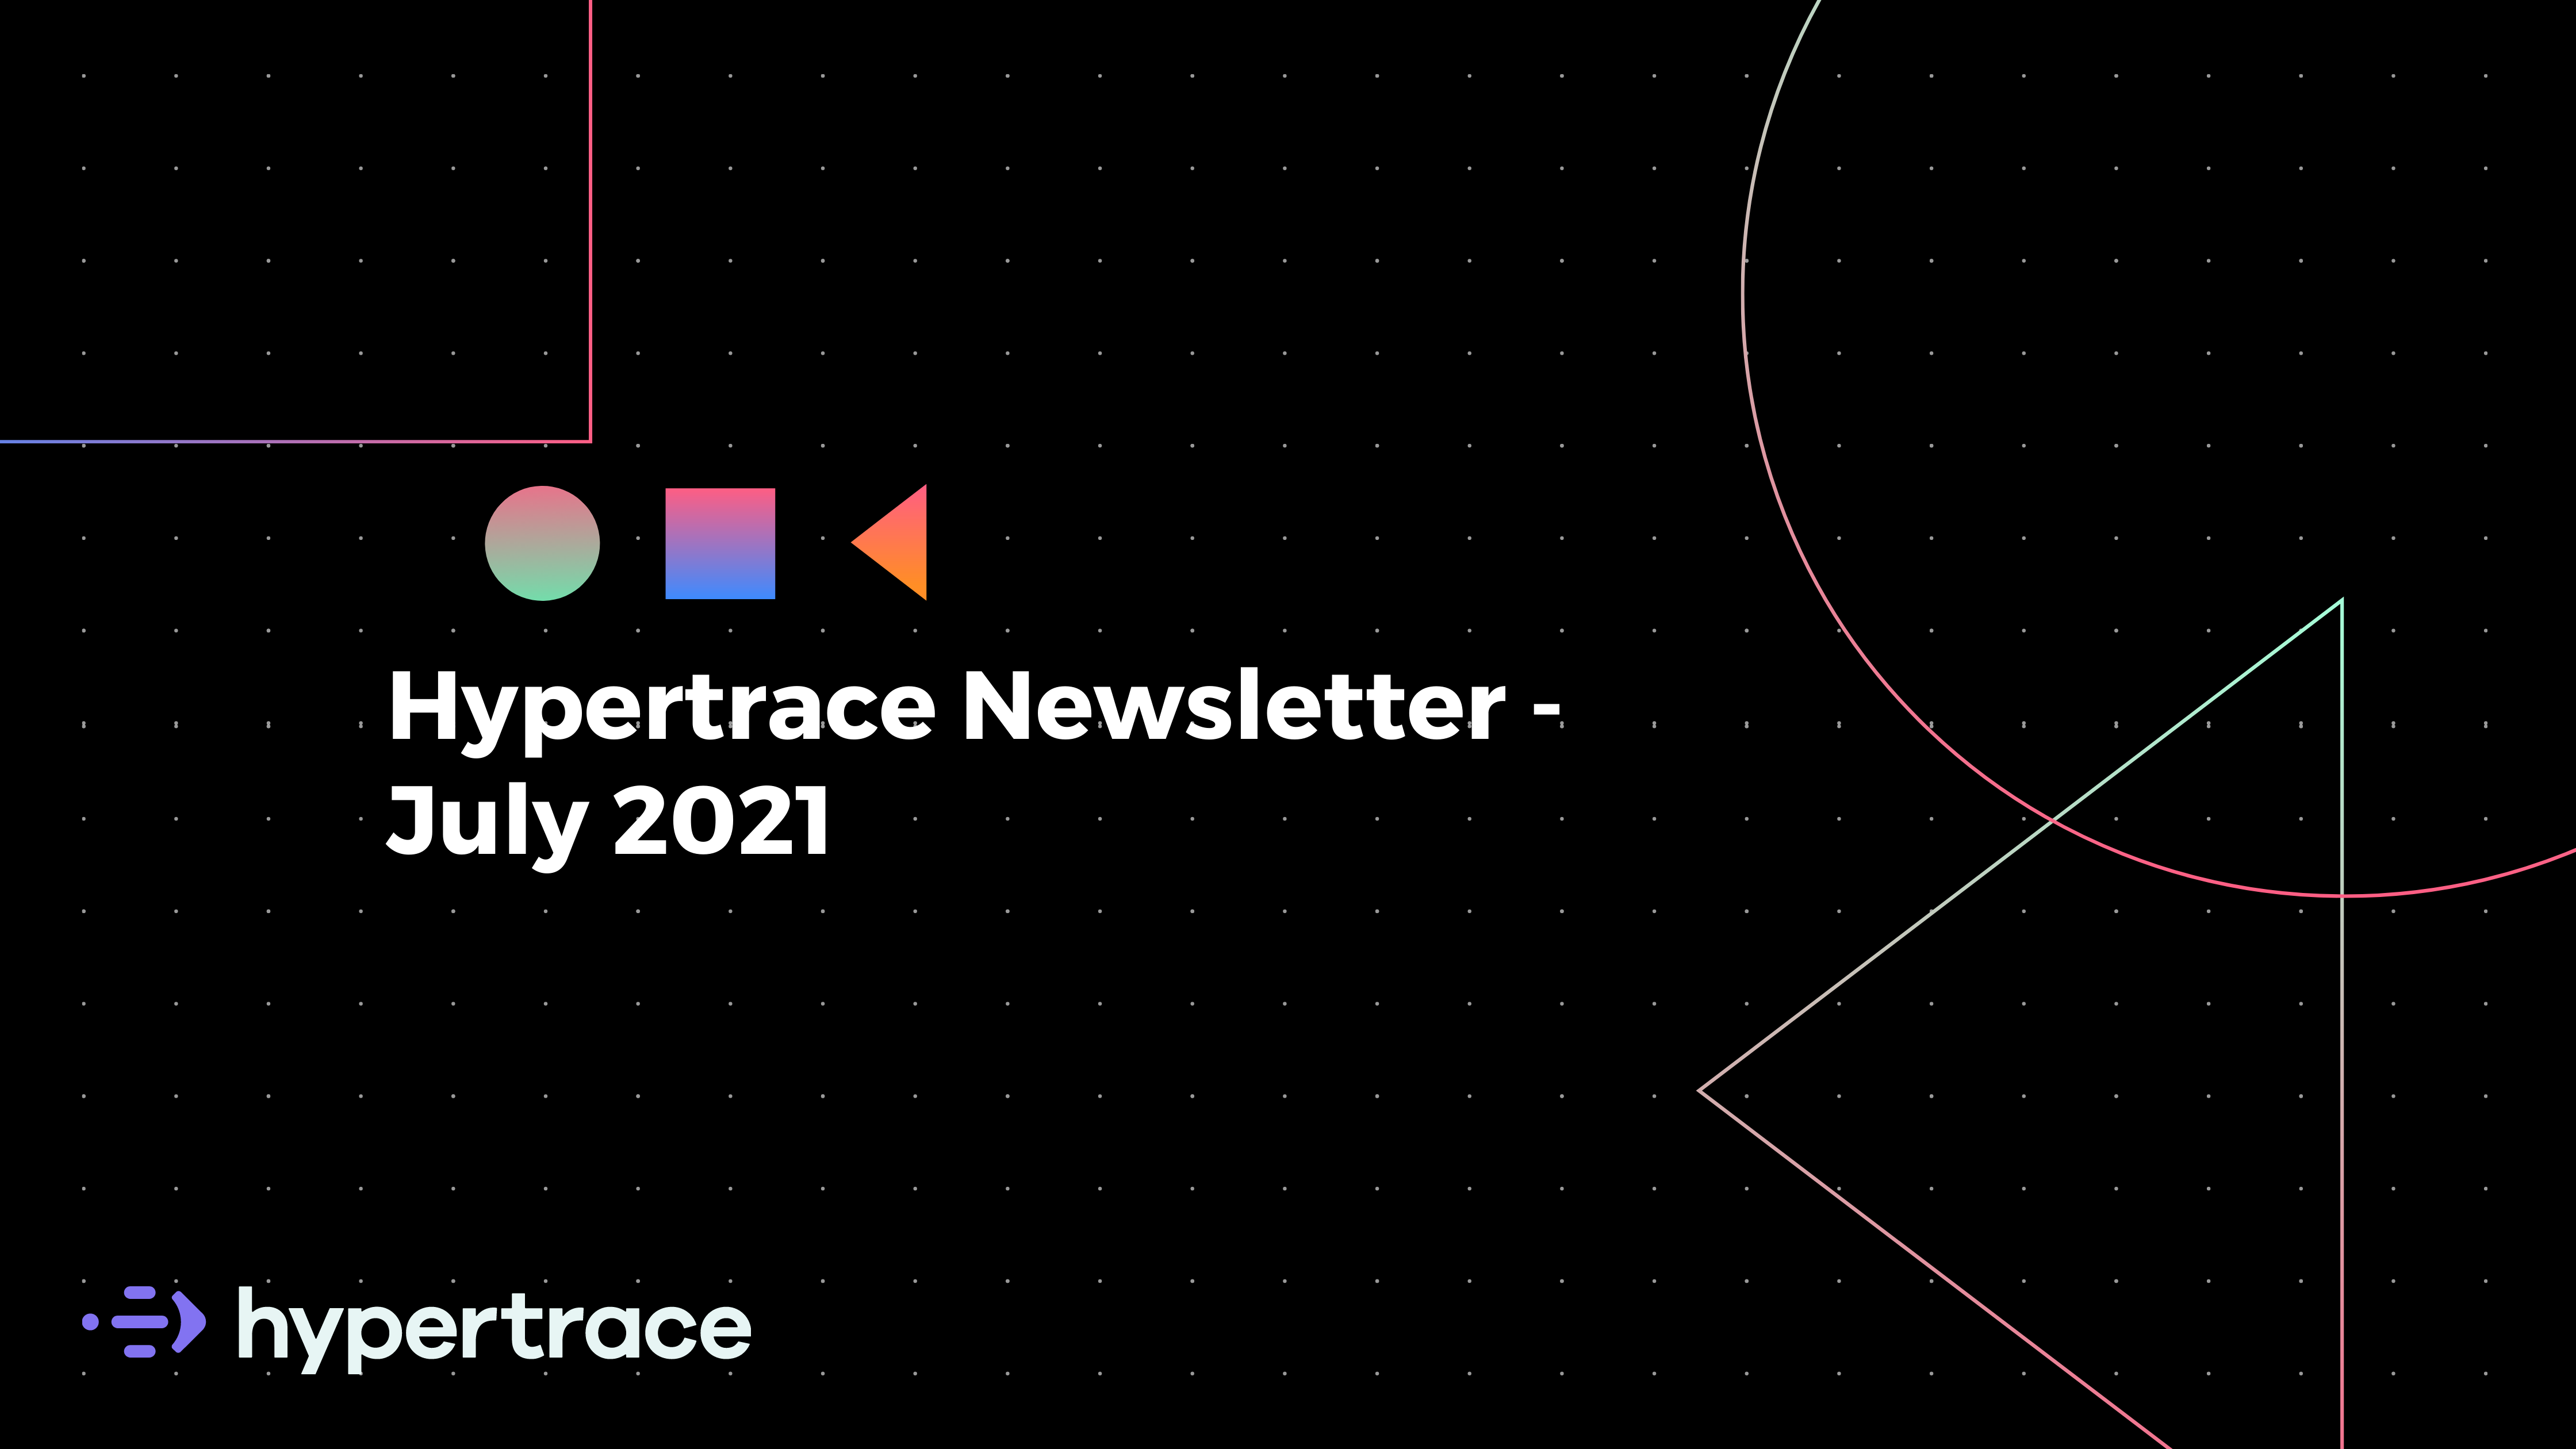 Hypertrace Newsletter July 2021